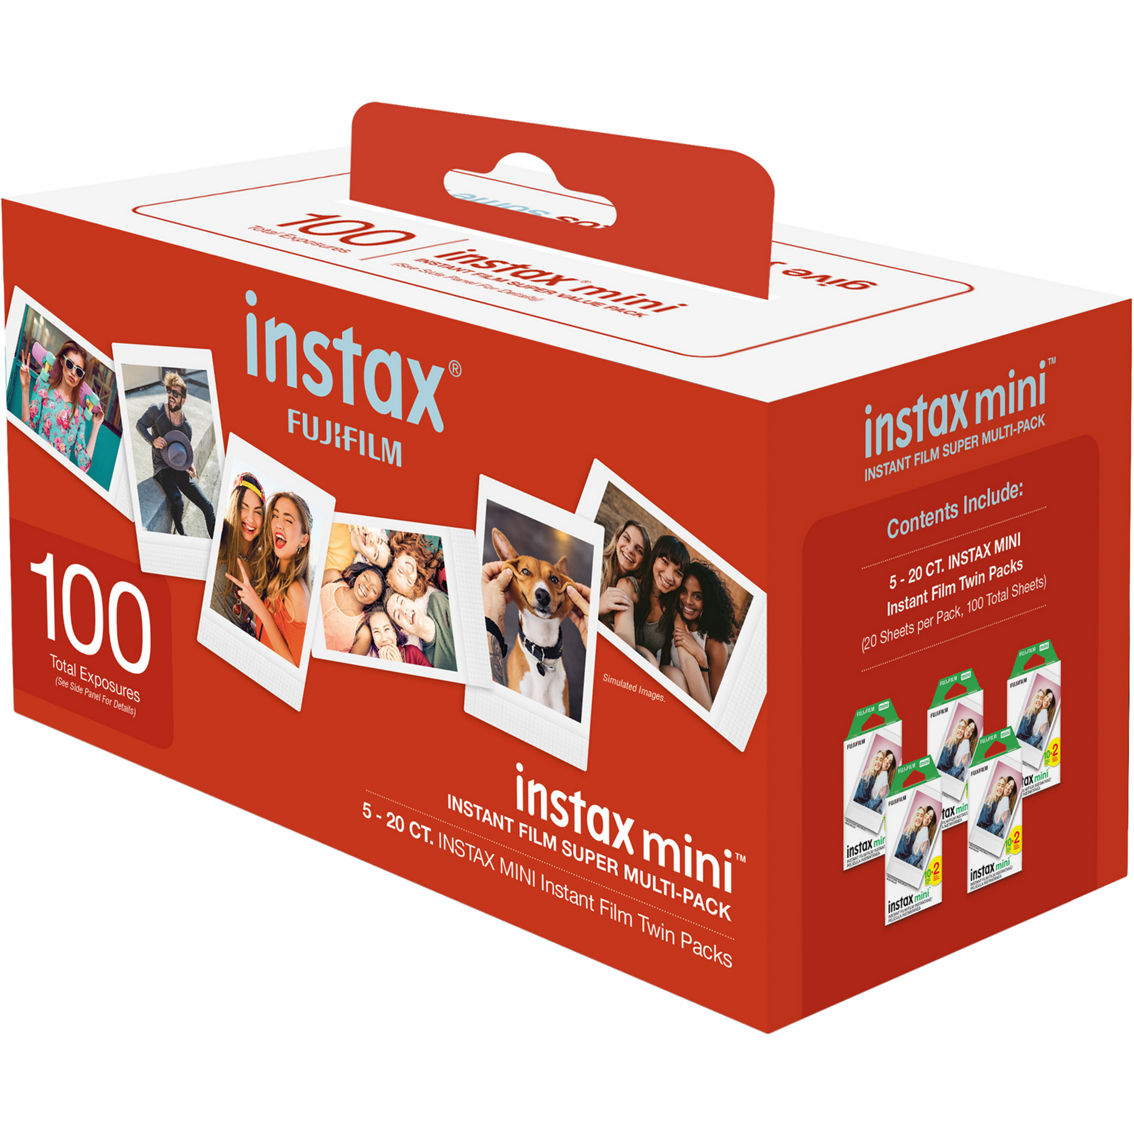 FujiFilm Instax Mini Film, Super value pack, 100 ct. - Image 2 of 2